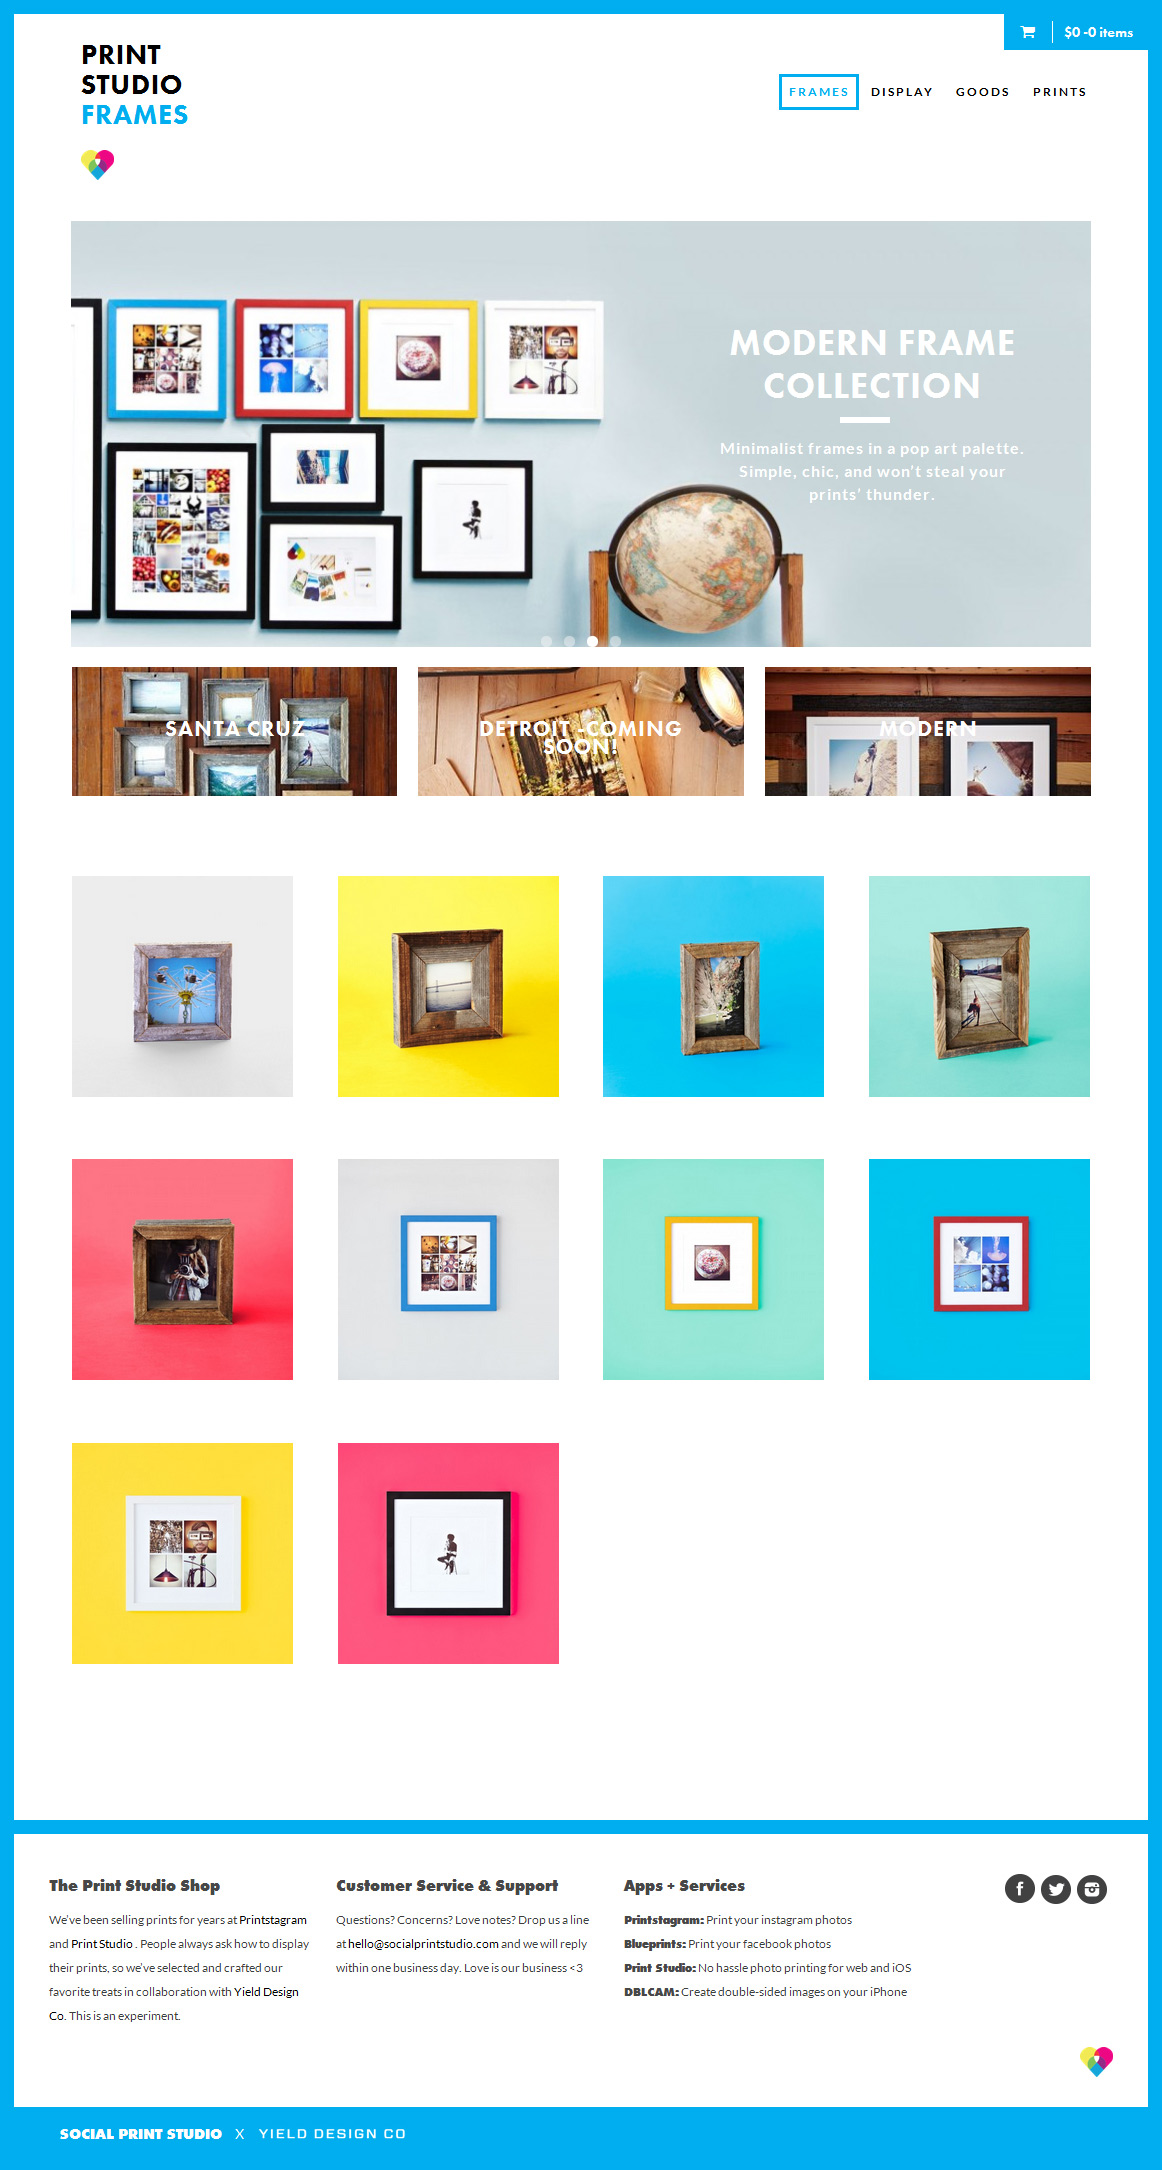 Frames---Print-Studio-Shop